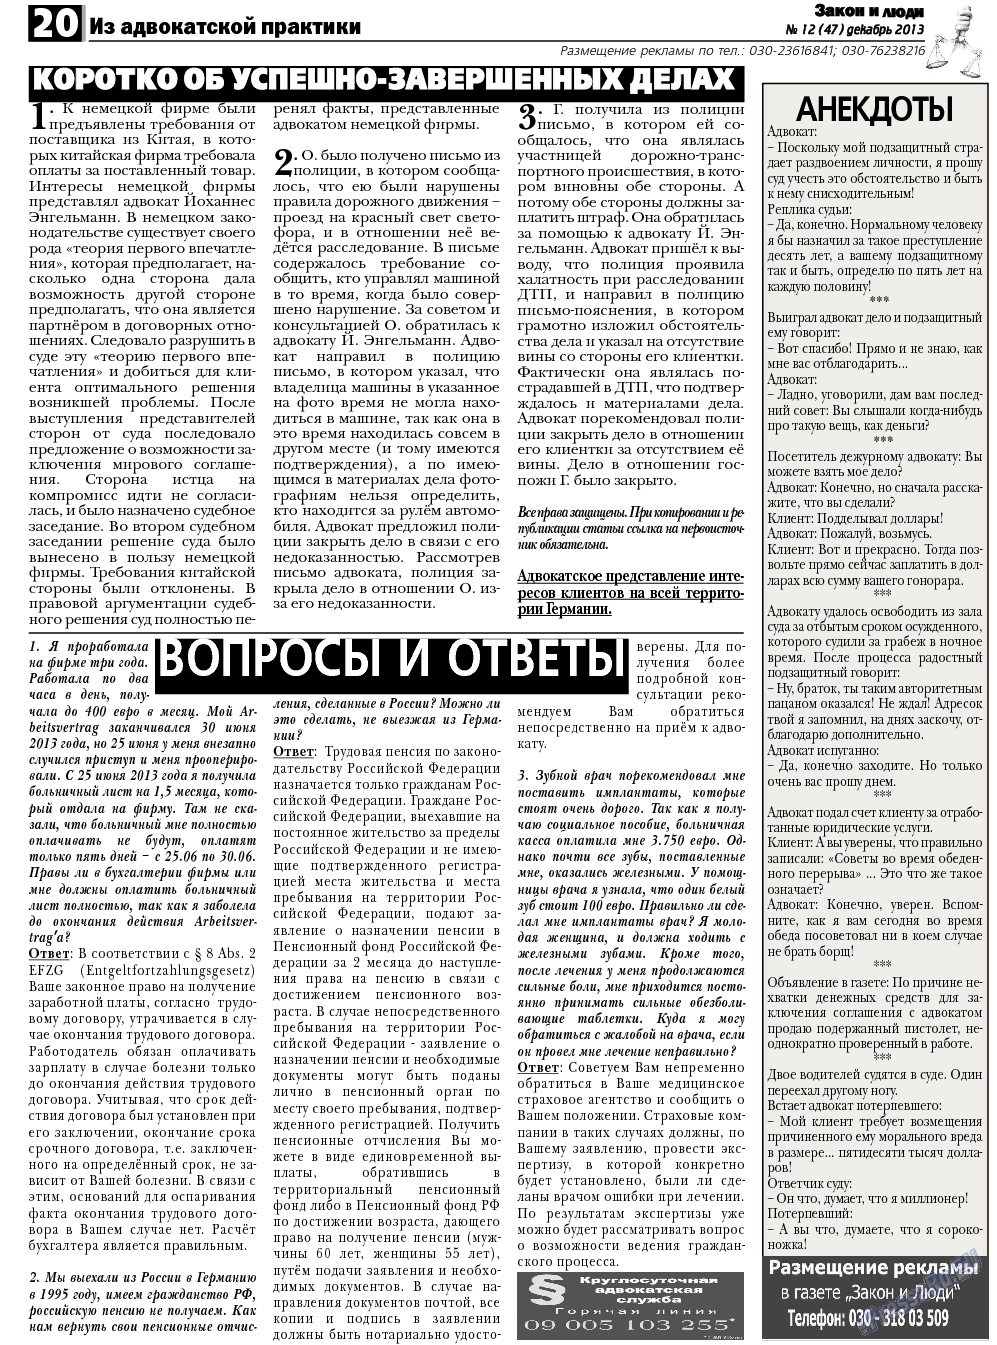 Закон и люди, газета. 2013 №12 стр.20